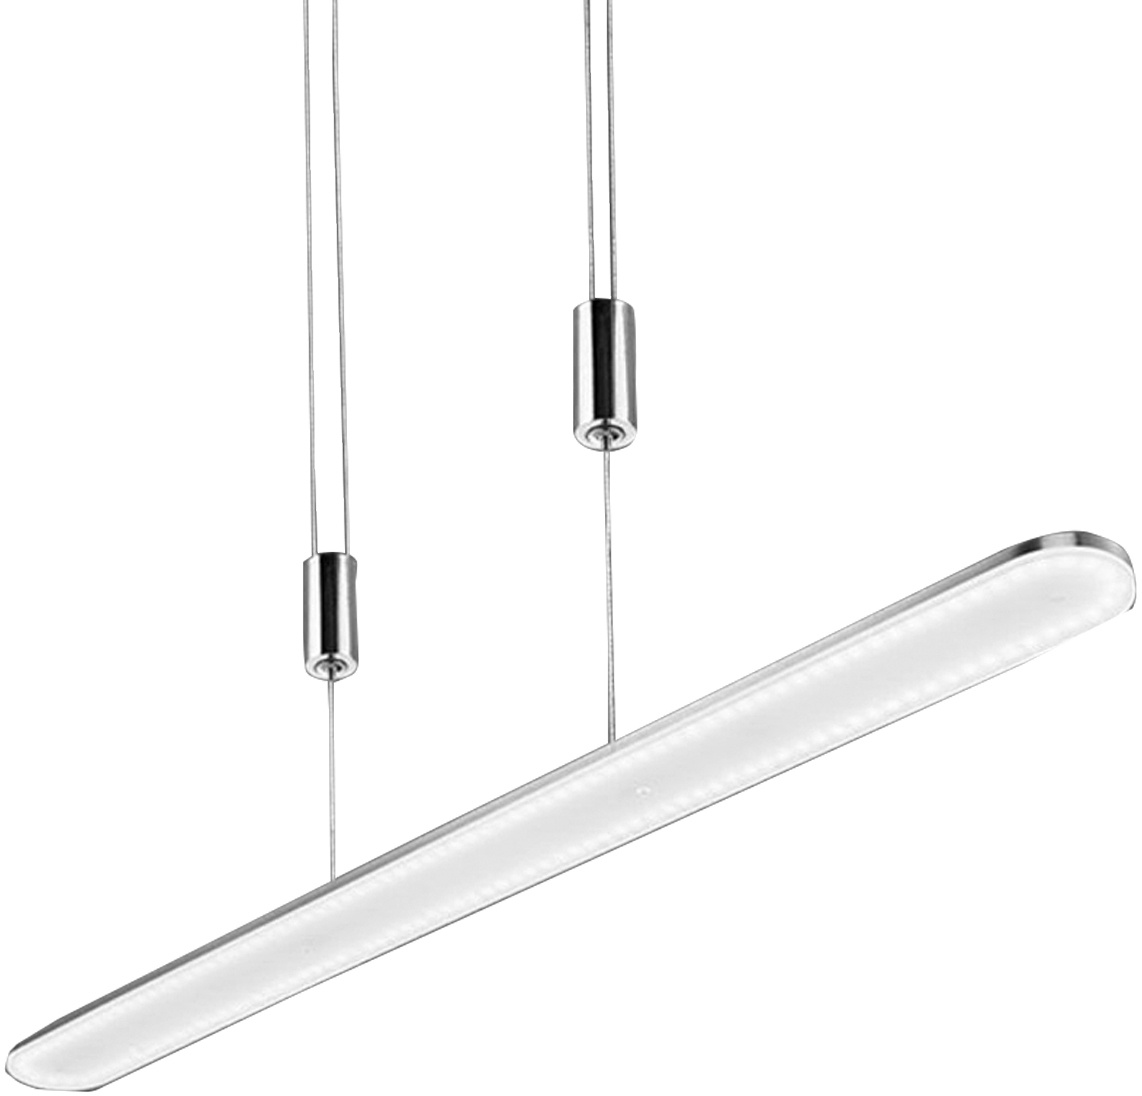 B-Leuchten LED-Pendelleuchte CADIZ, Nickel matt - Weiß - Metall - Kunststoff - 75 x 150 cm - höhenverstellbar